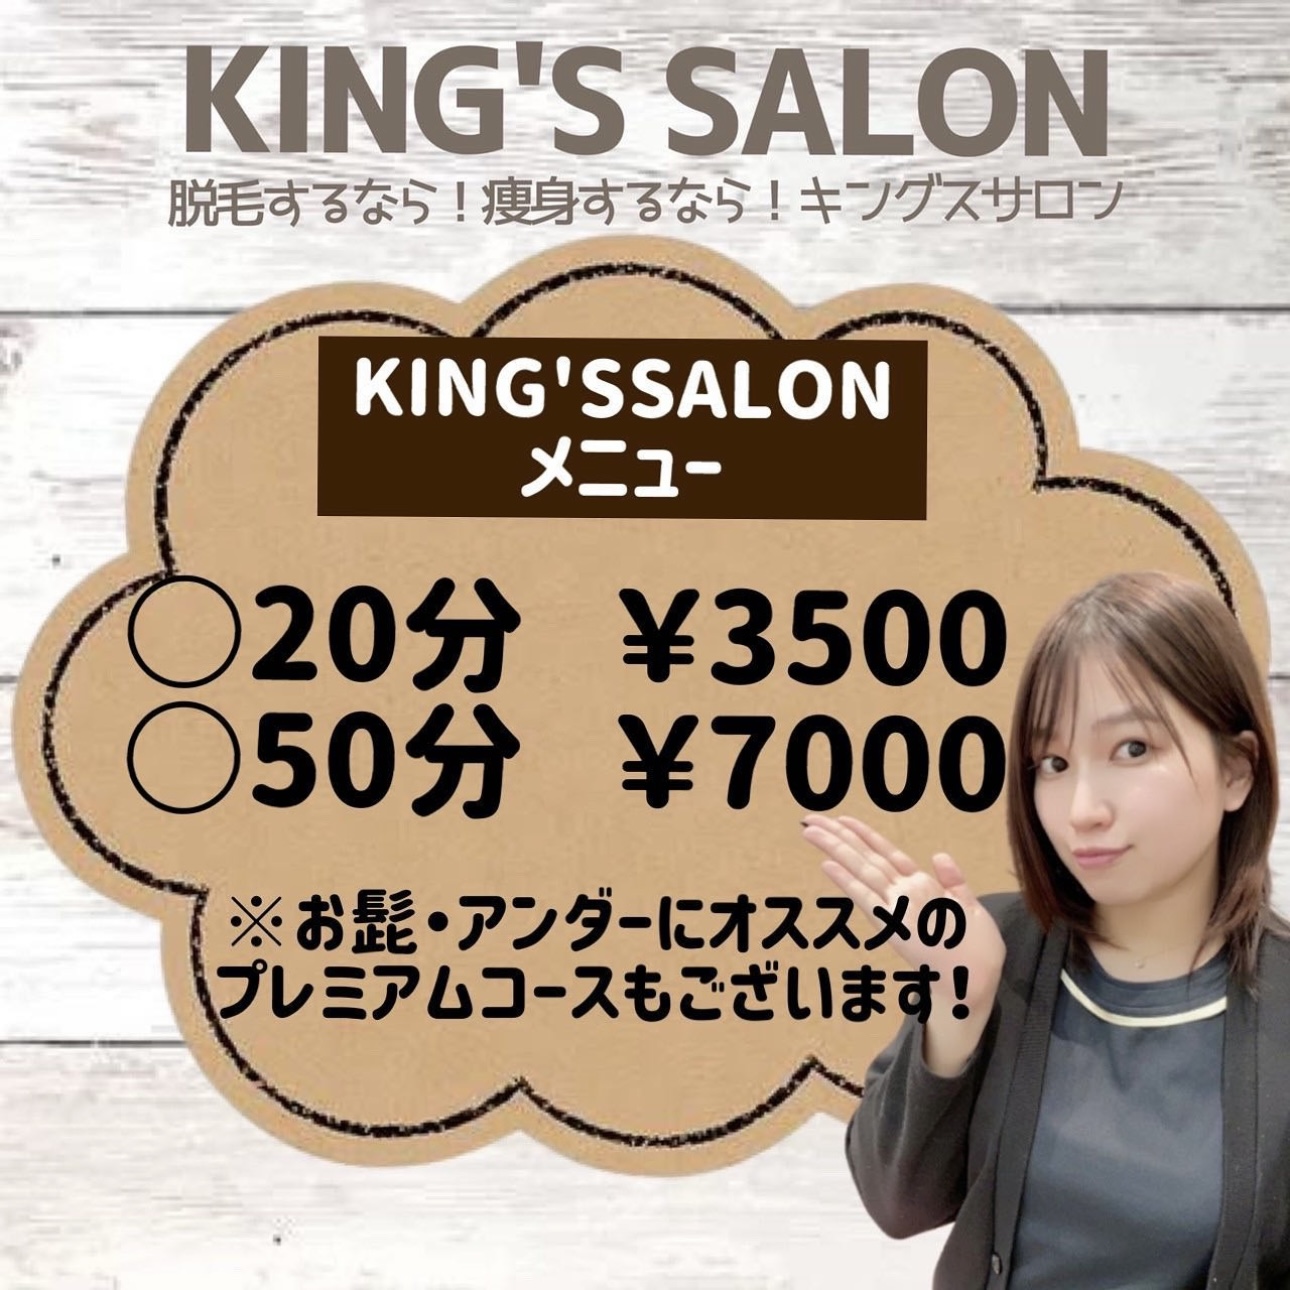 KING’S SALON基本メニュー📕✨のサムネイル画像